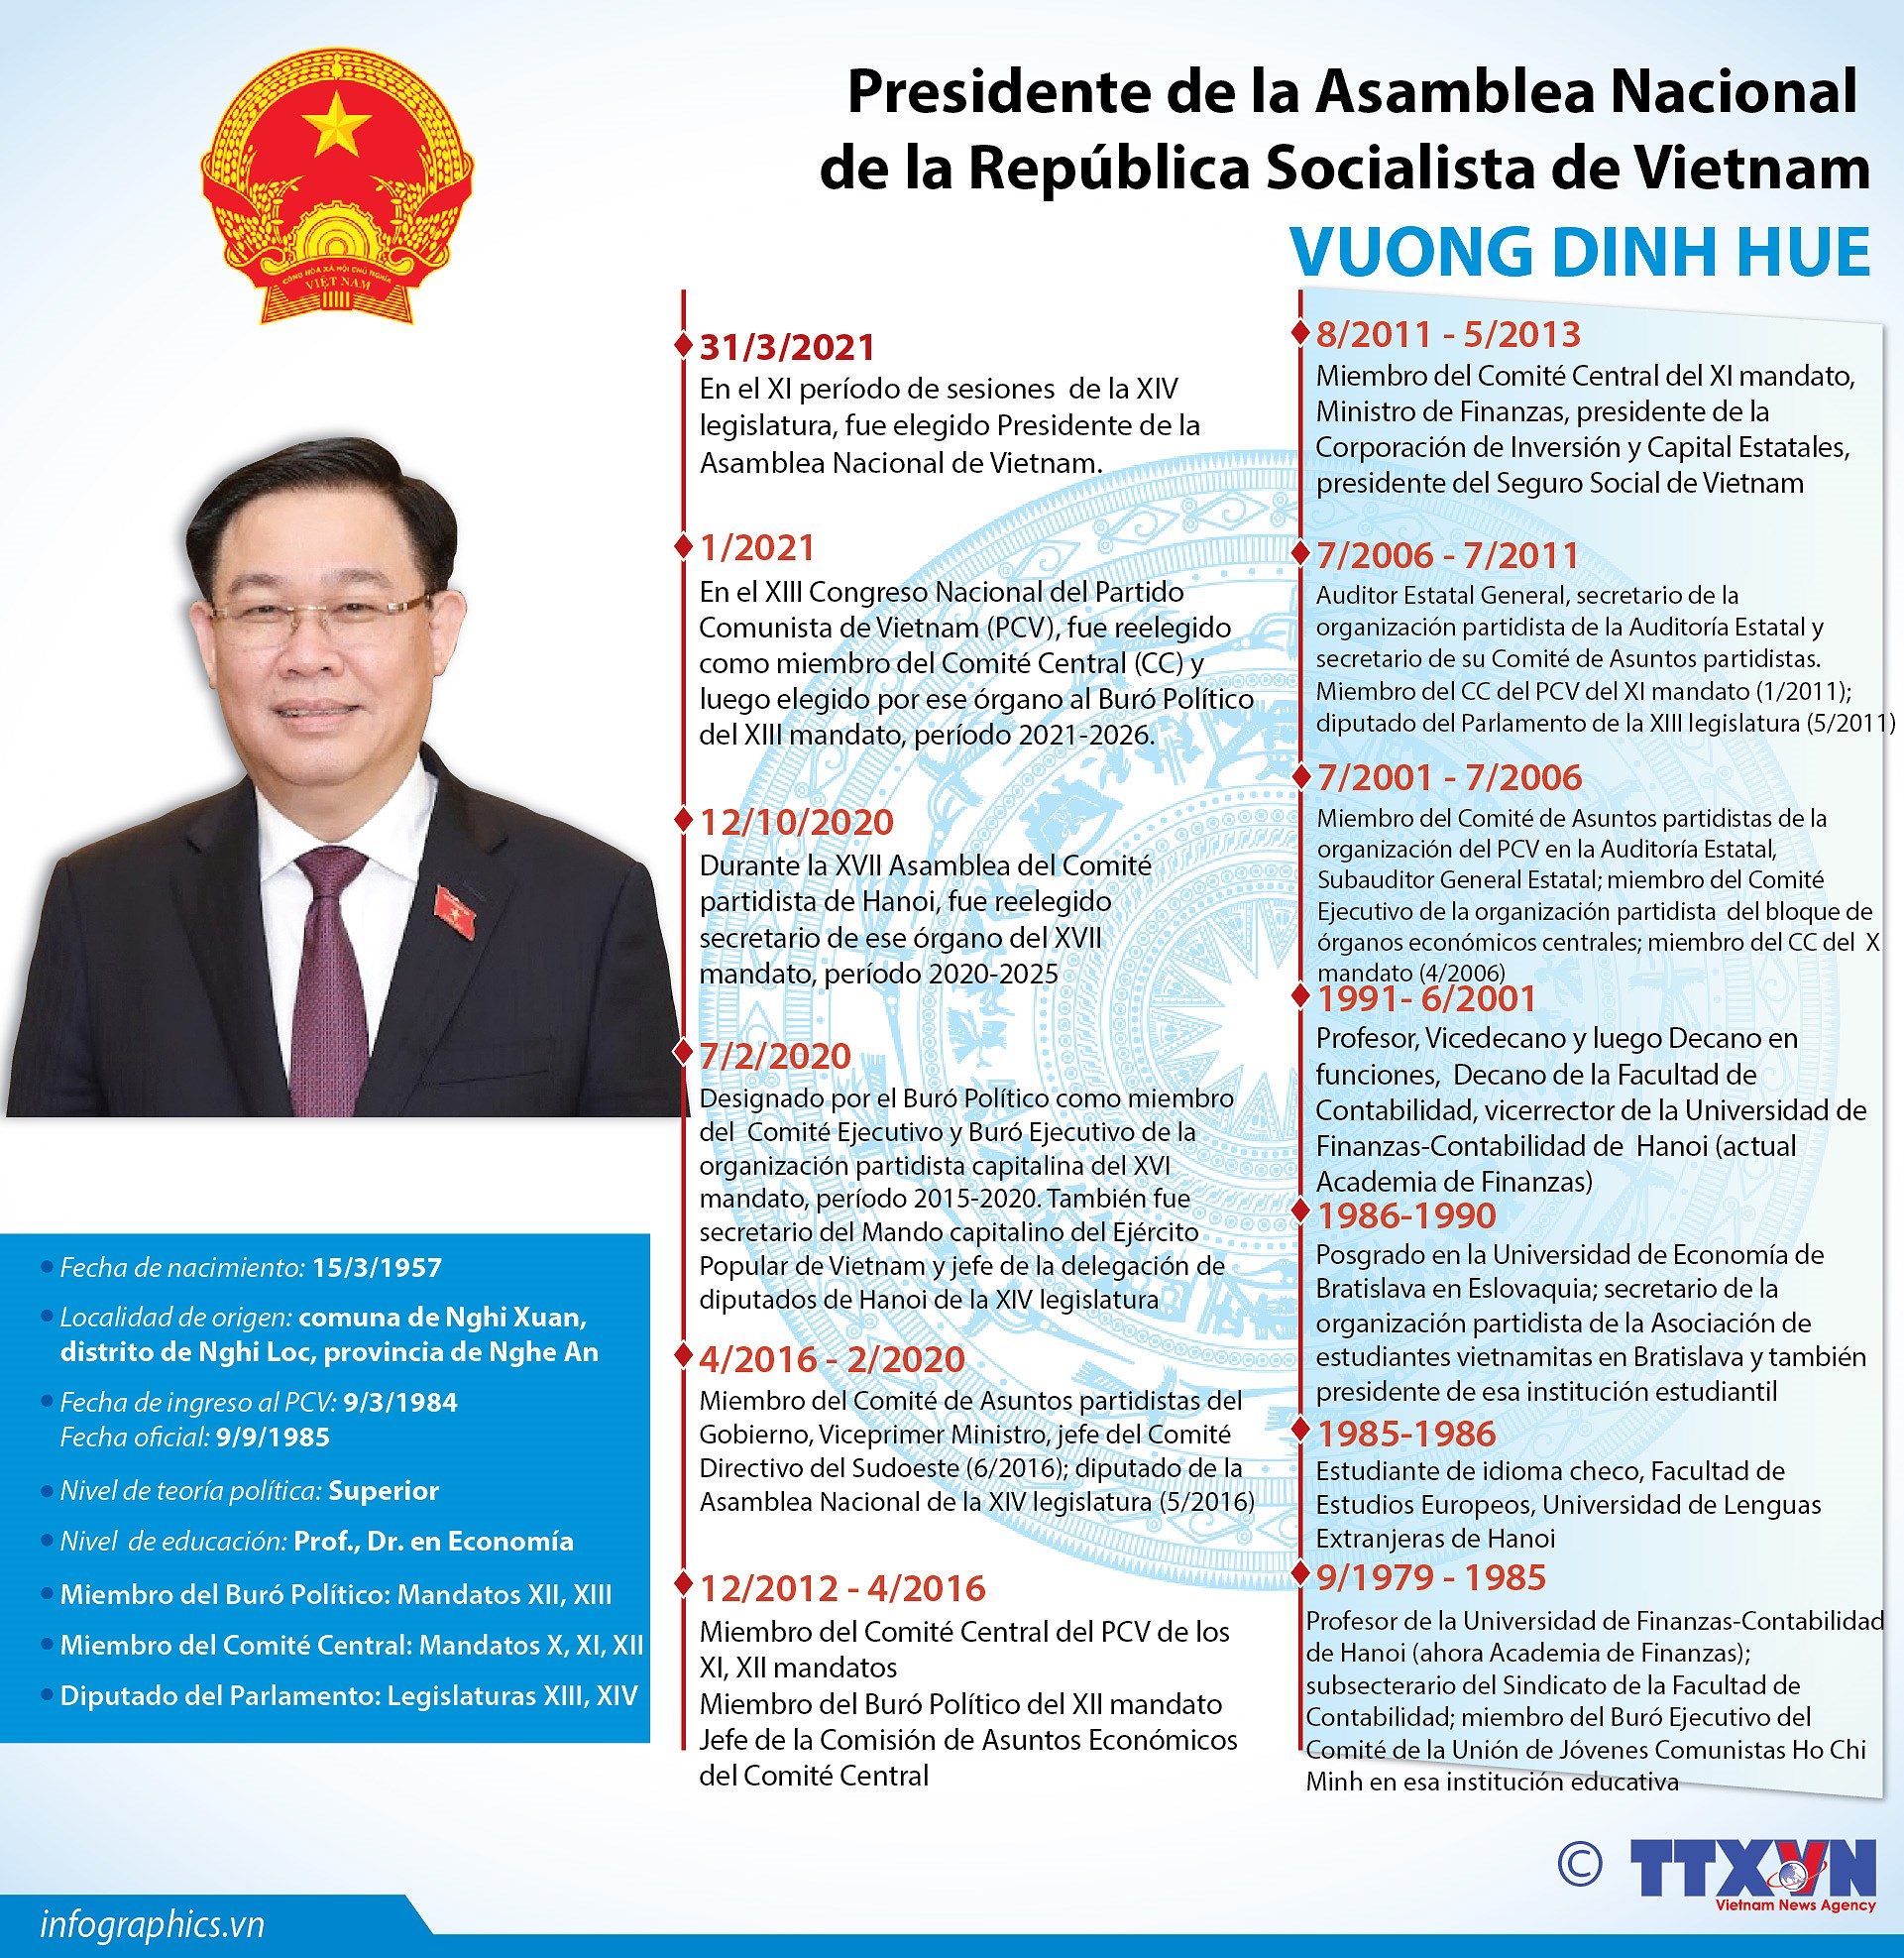 Vuong Dinh Hue elegido Presidente de la Asamblea Nacional de Vietnam hinh anh 2